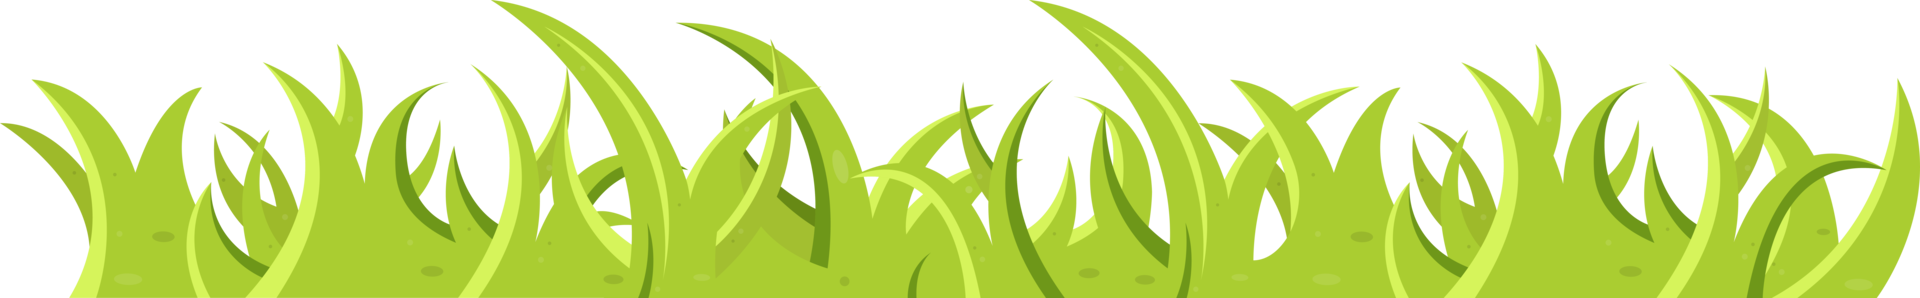 groen gras en bladeren in cartoonstijl png